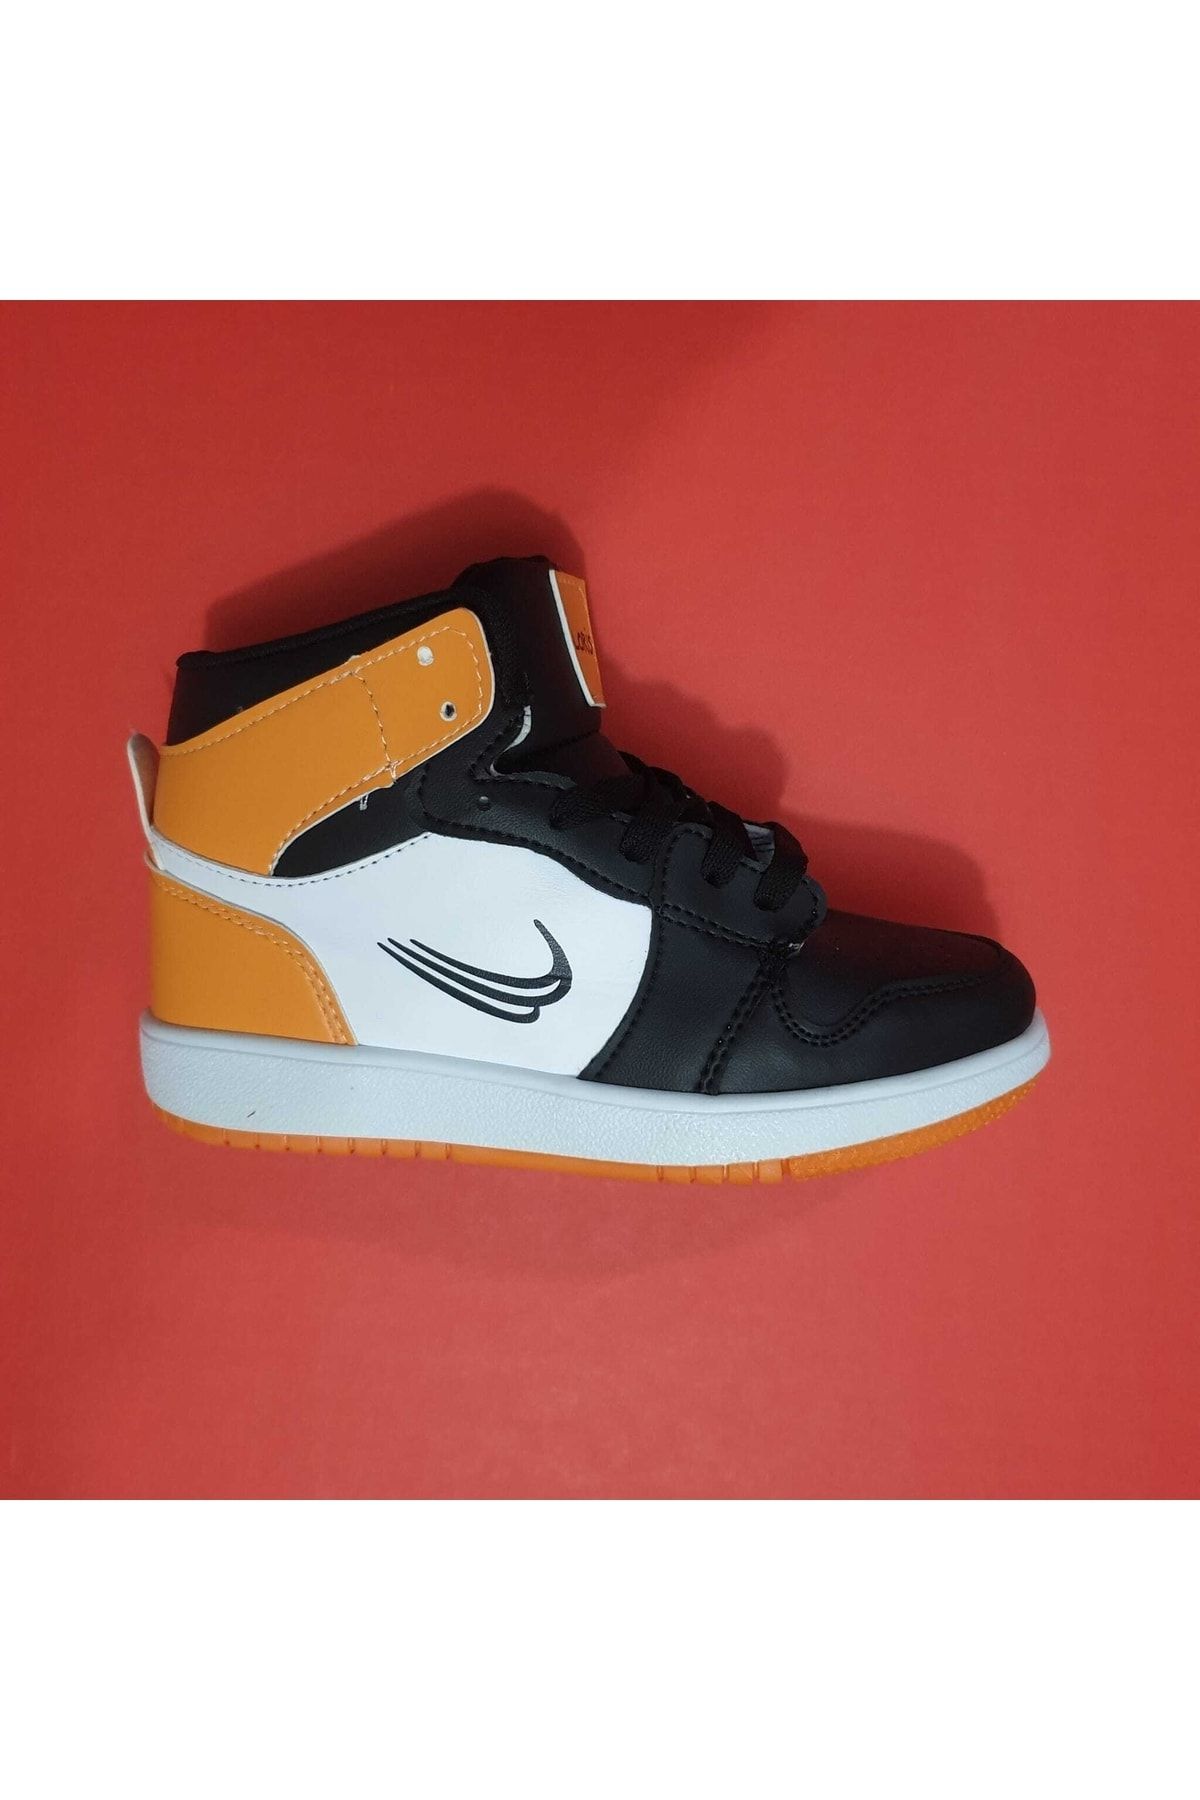 Loris Jordan Unisex Çocuk Boğazlı Spor Ayakkabı Bilekli Sneaker Siyah-oranj Uzun Boğazlı Spor